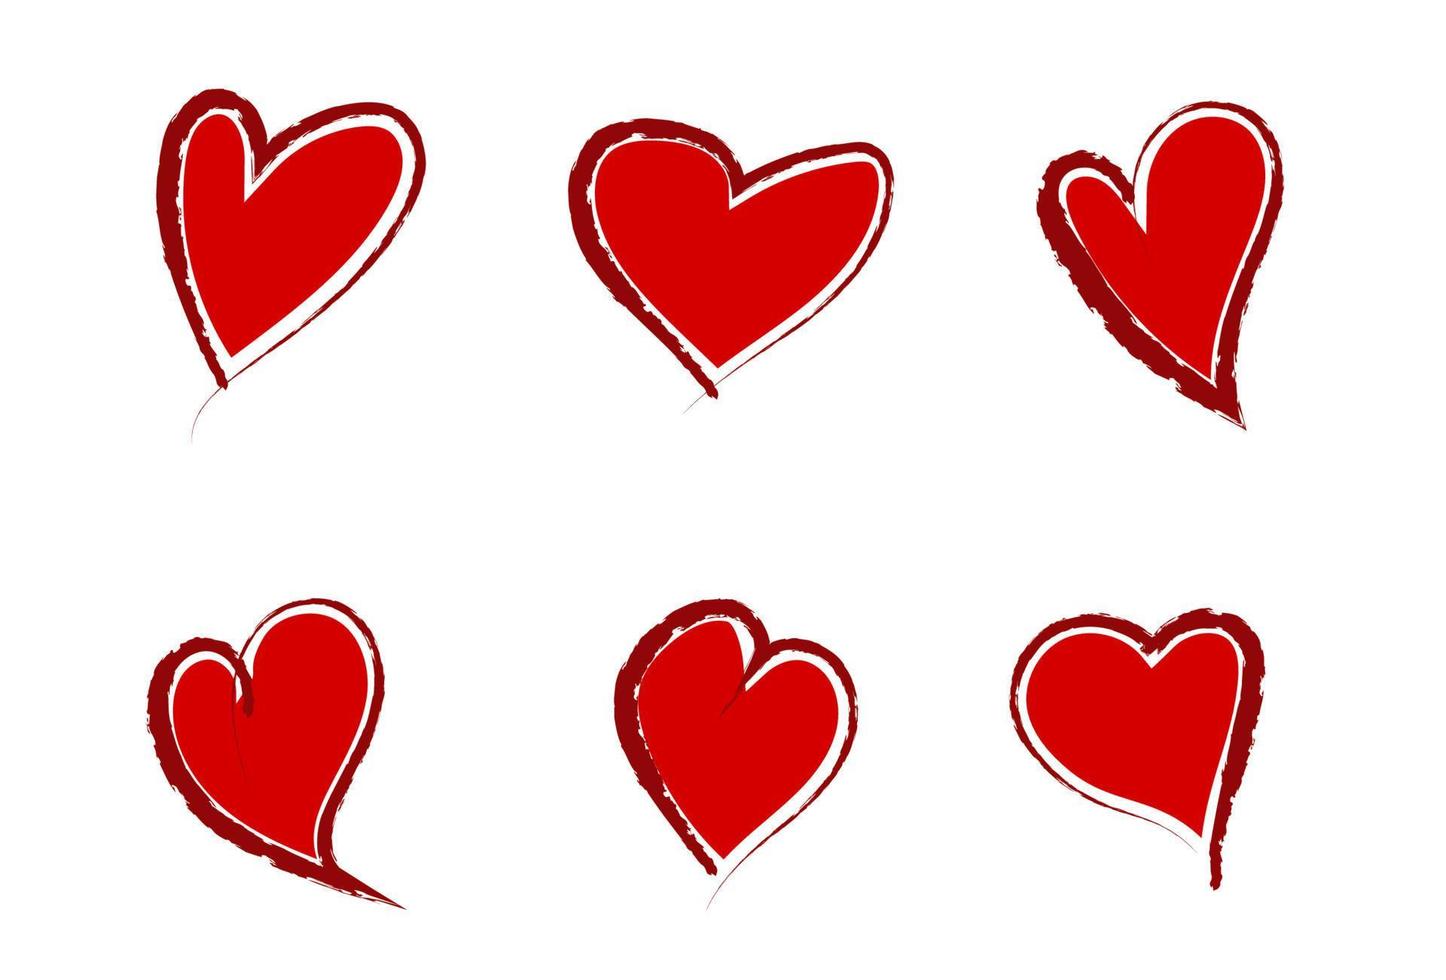 conjunto de corazones grunge originales dibujados a mano rojos en estilo grunge. vector aislado sobre fondo blanco